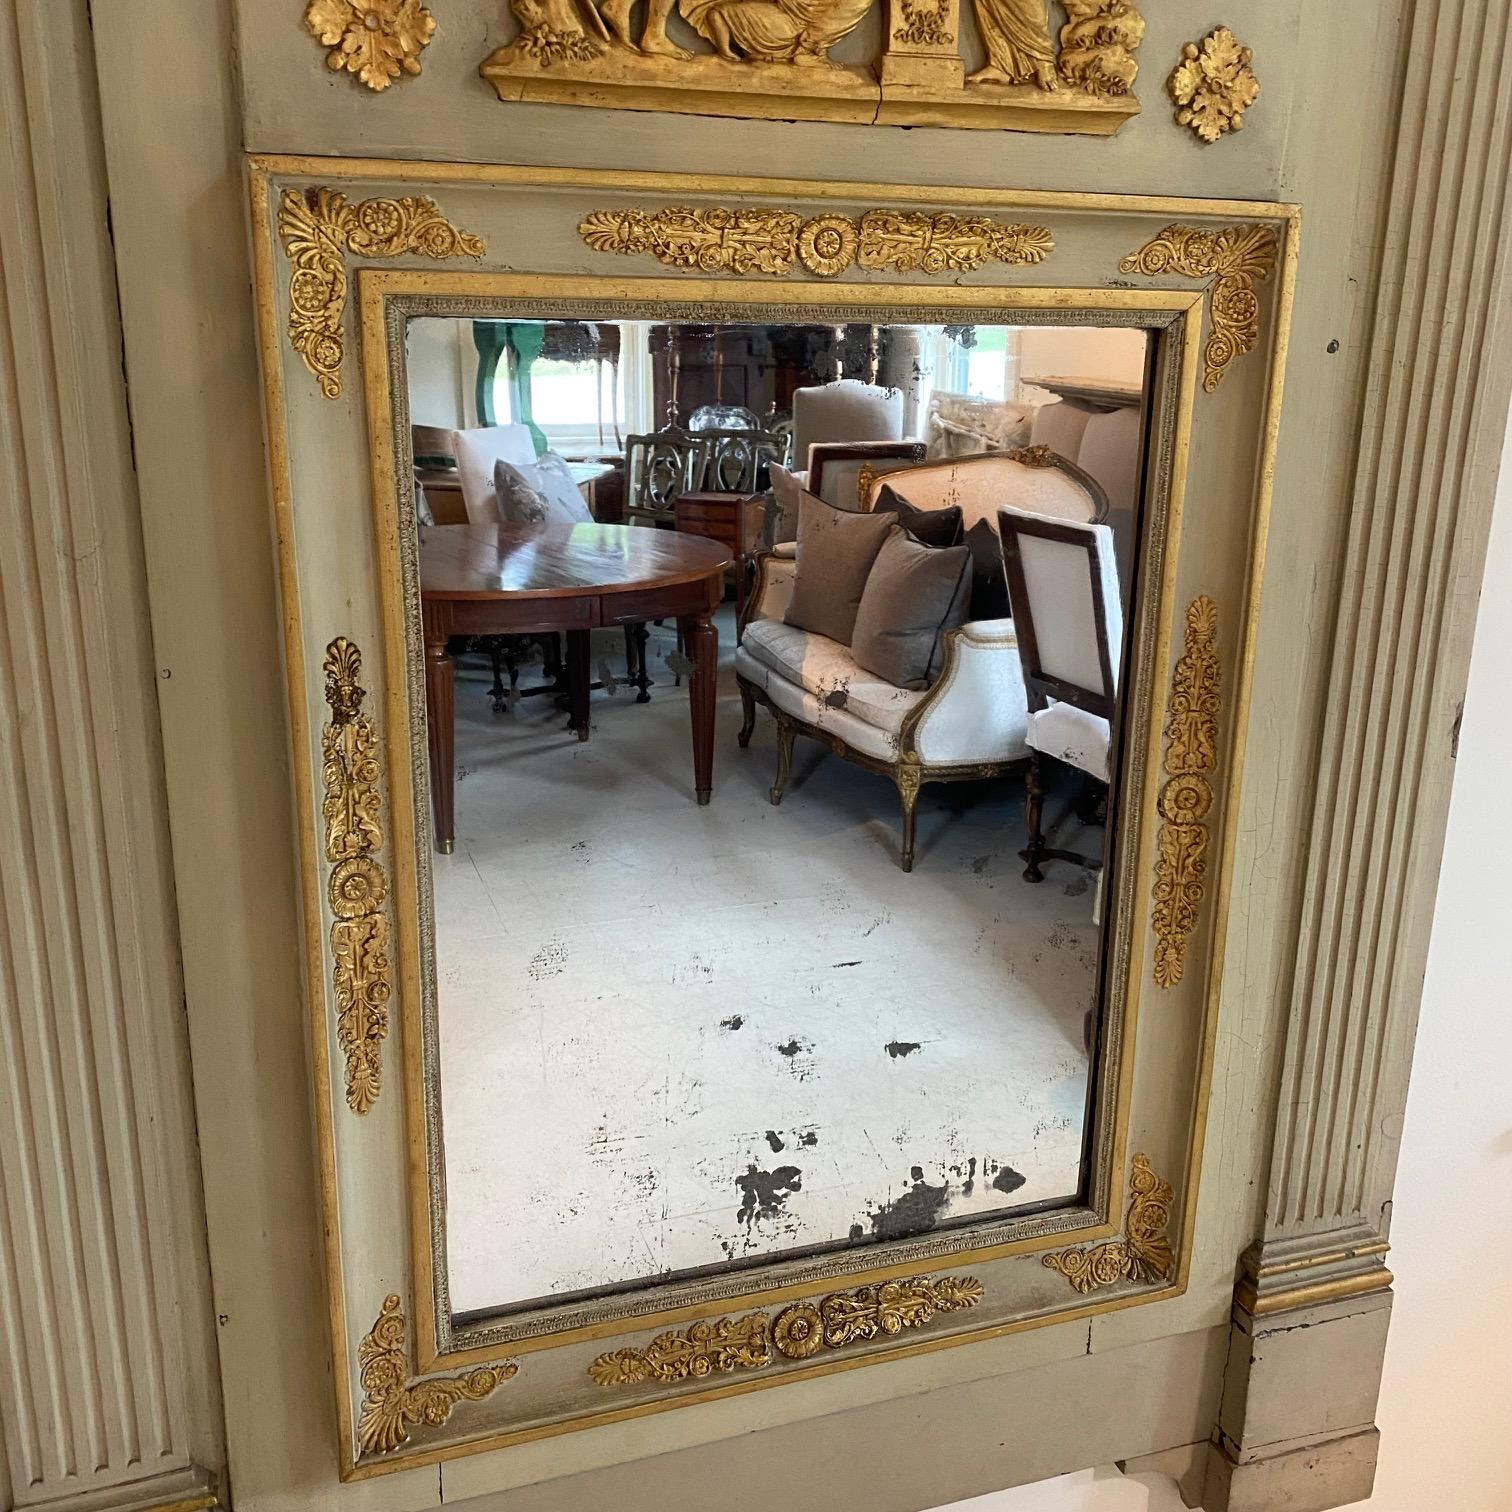 Miroir à trumeau d'époque Louis XVI avec cadre peint au céladon et scène pastorale figurative en dorure d'origine, vers 1800. Miroir original en verre au mercure.
Miroir intérieur 25,5 H 19 W
#5842.